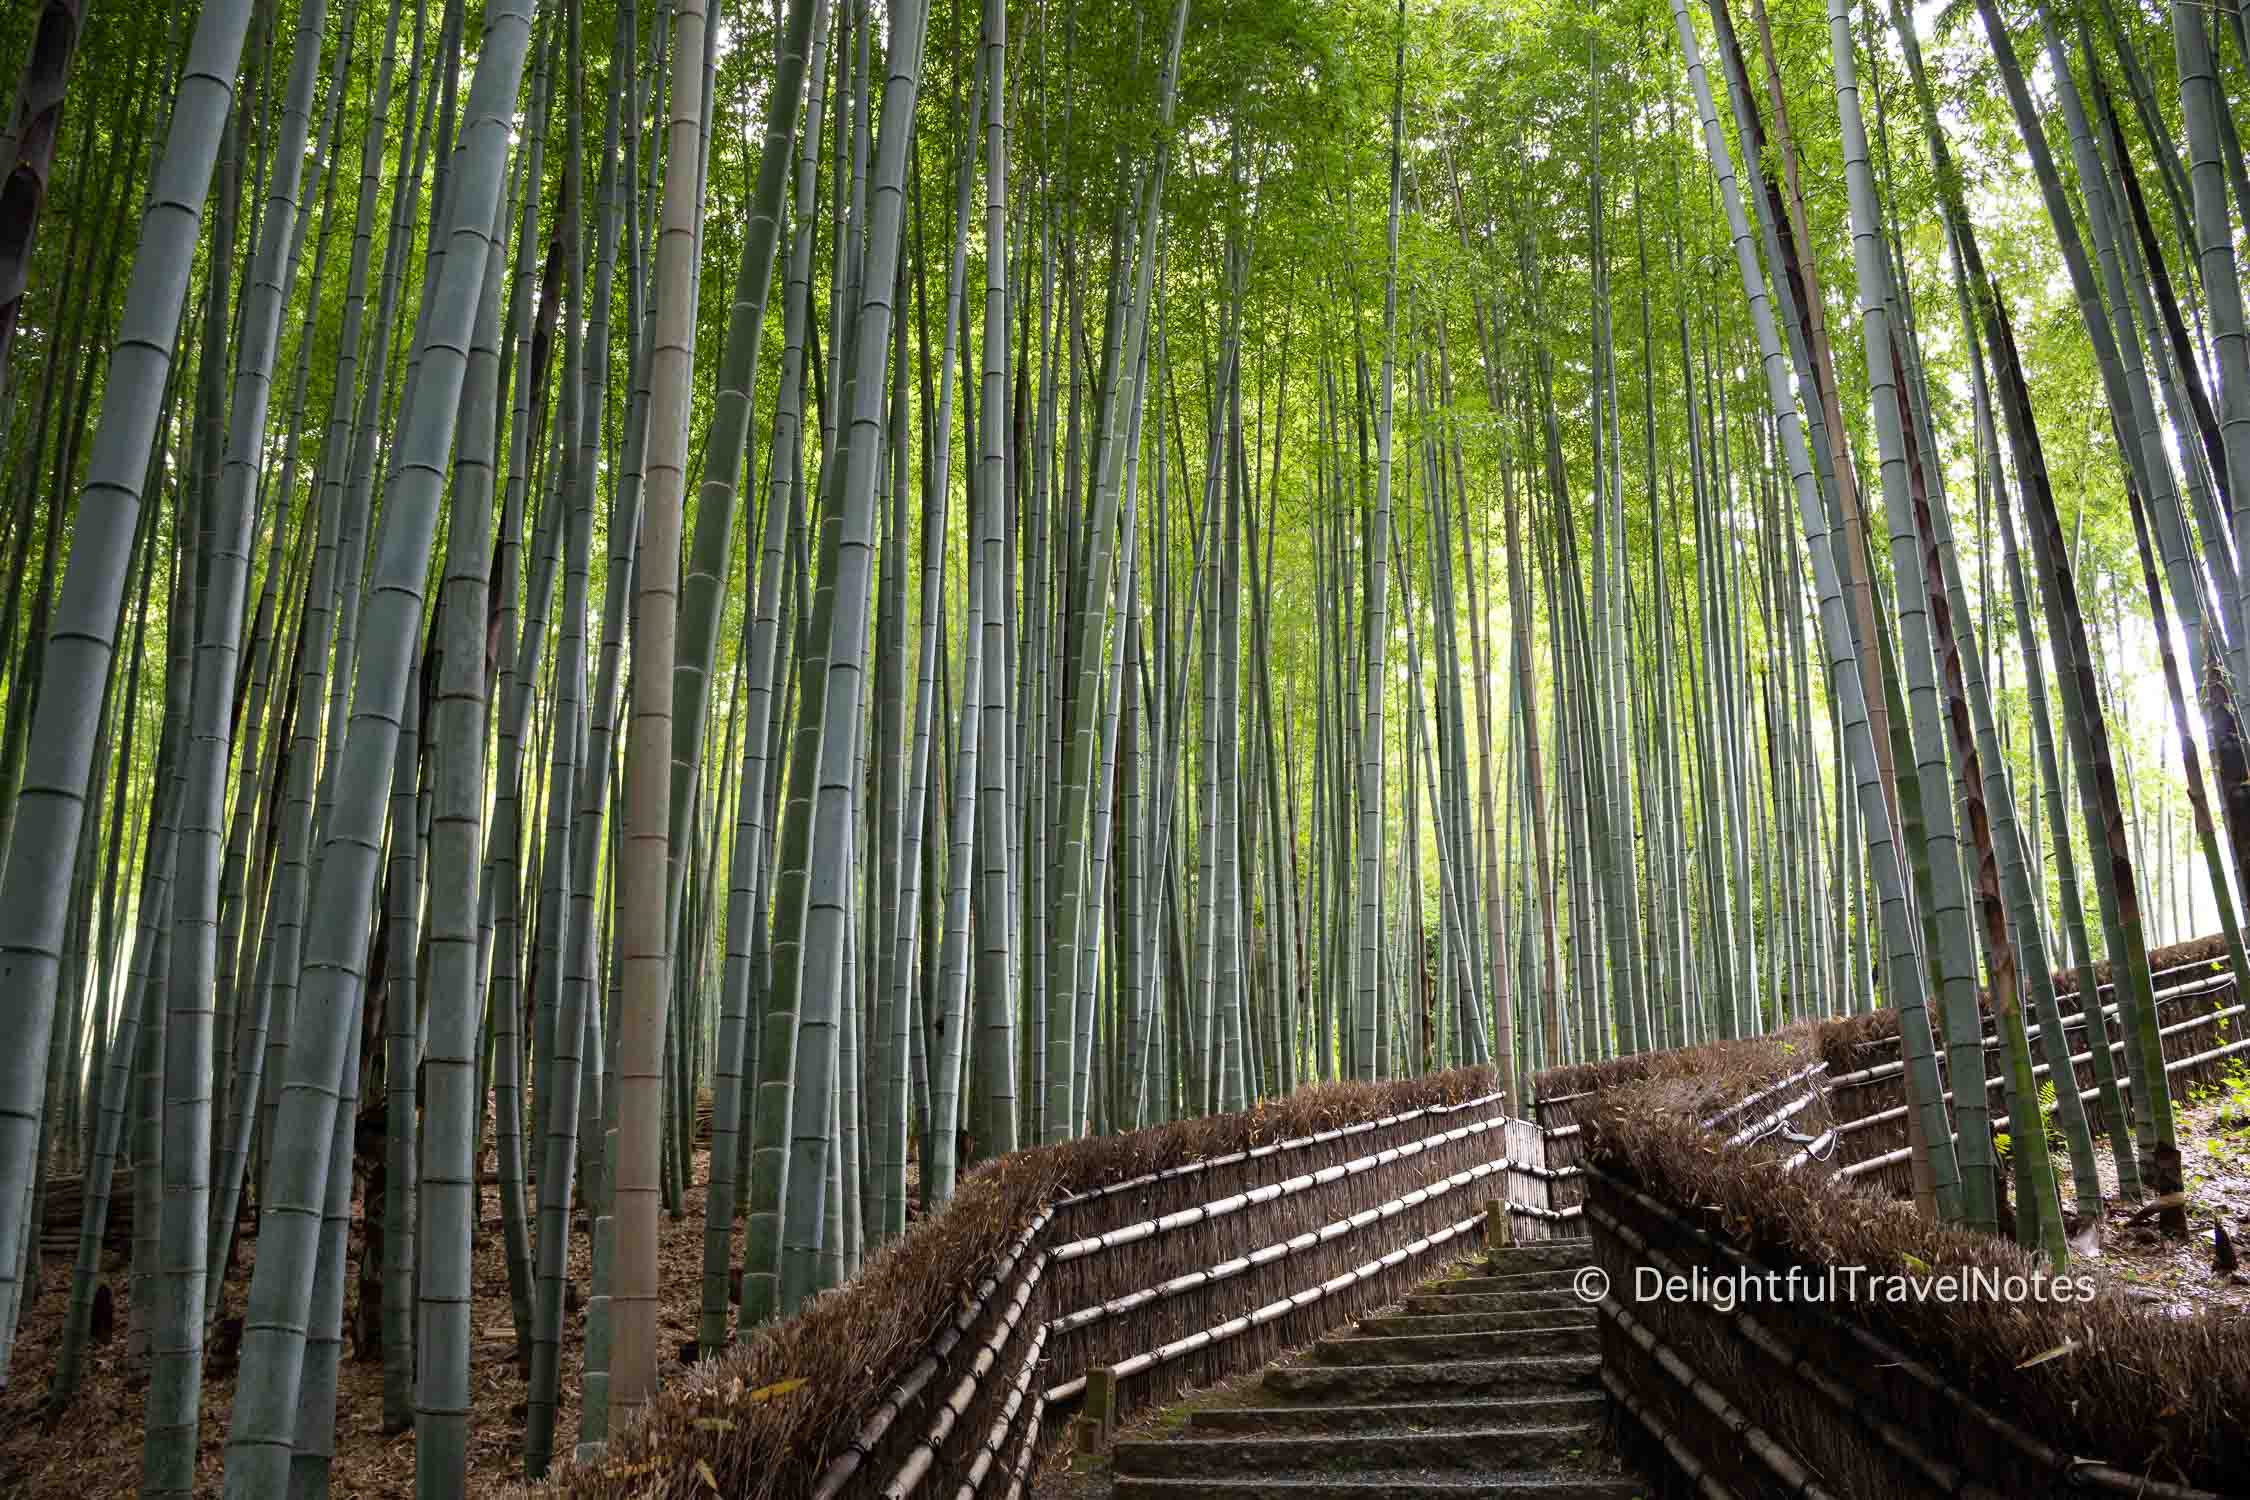 Bamboo Groves at Adashino Nenbutsu-ji temple in Kyoto